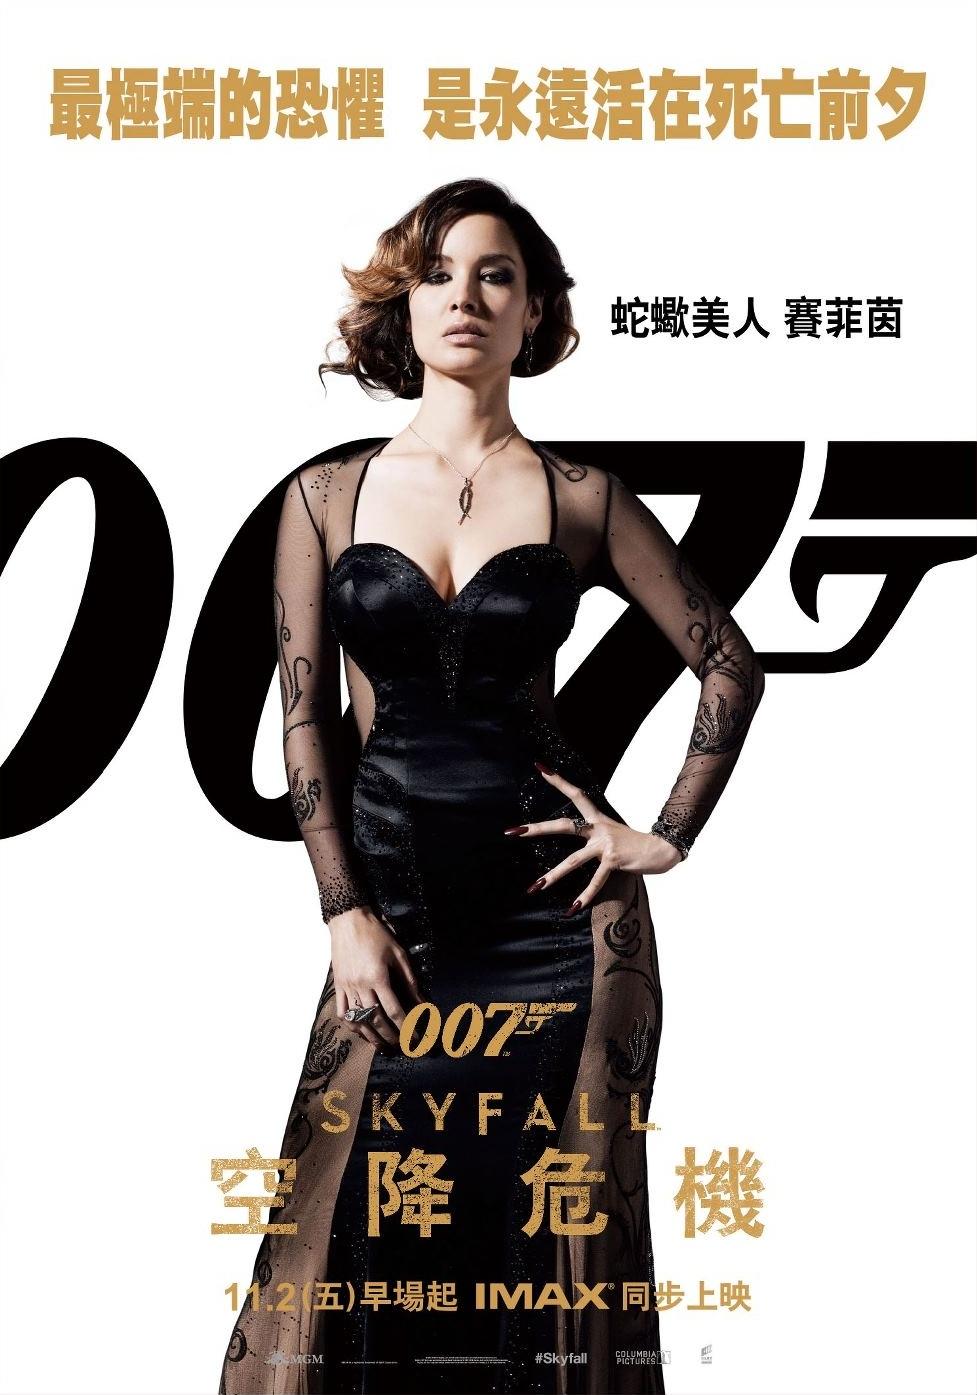 Постер фильма 007: Координаты «Скайфолл» | Skyfall